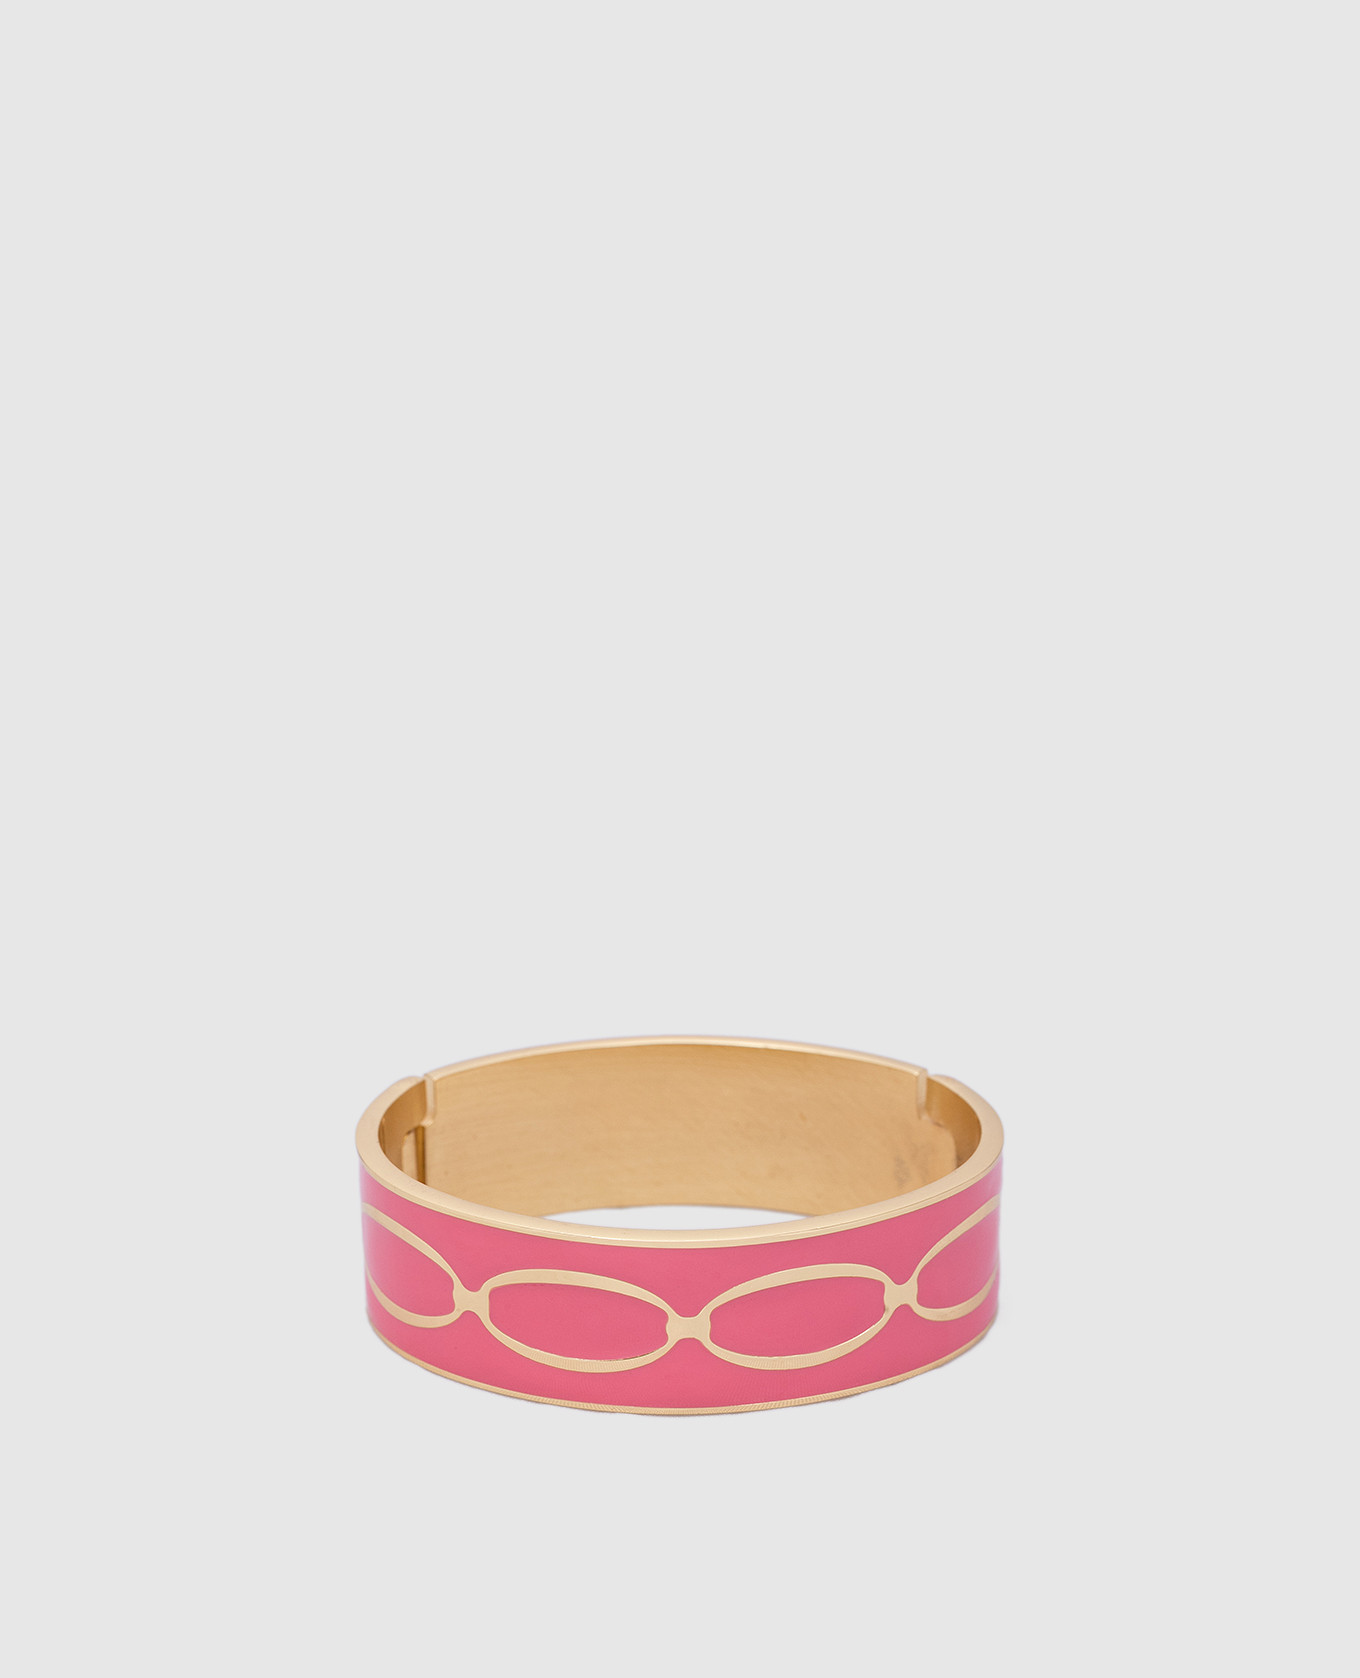 Розовый браслет с узором Knot с покрытием 24-каратным золотом.